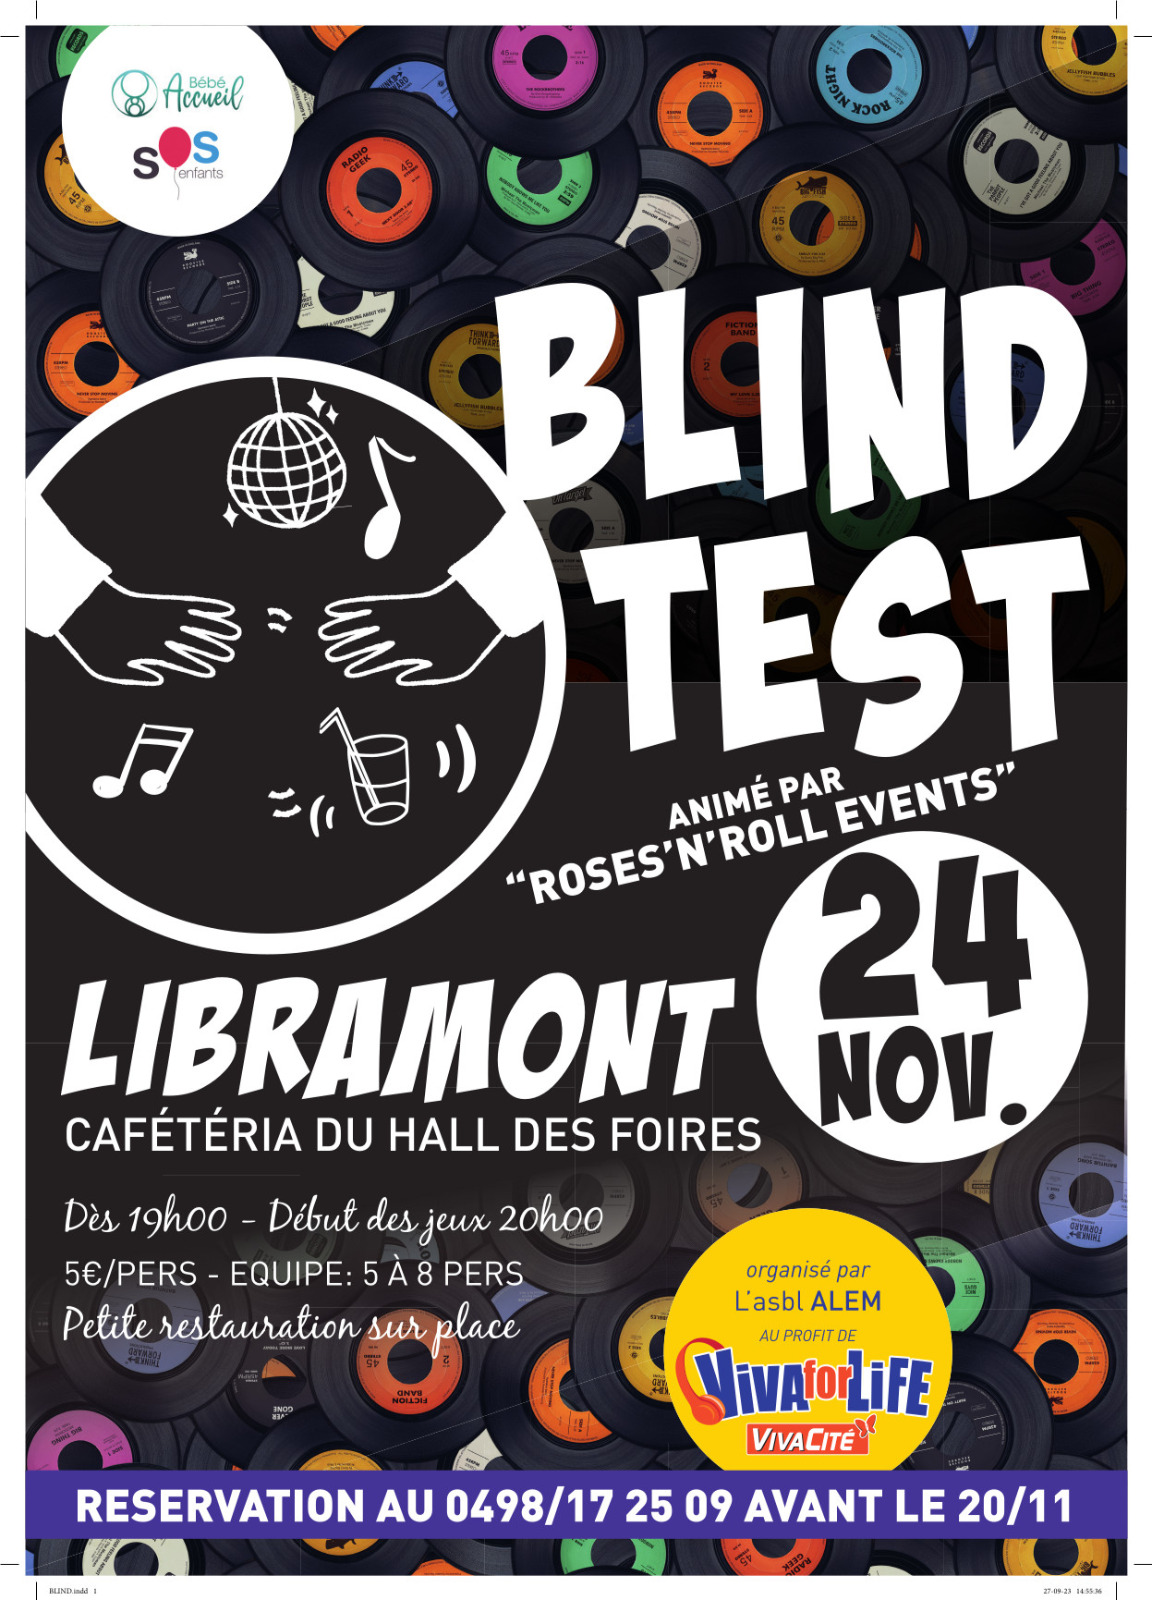 Opération Viva for Life - Blind test à Libramont ( Cafétaria du Hall des Foires). Récolte de fonds.